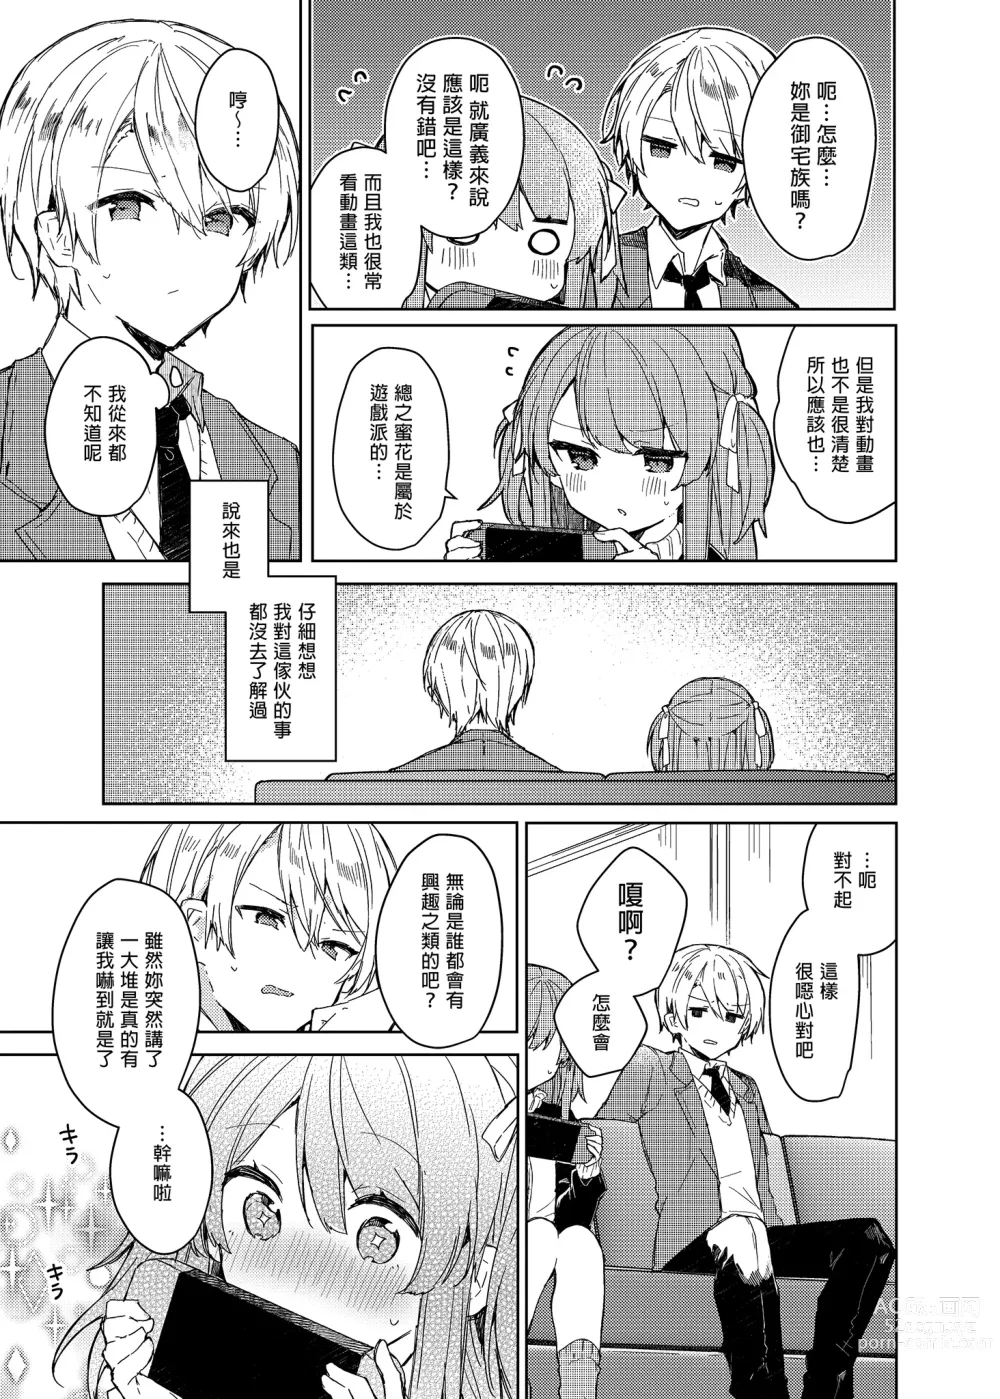 Page 35 of doujinshi 今天開始當個壞孩子。 (decensored)